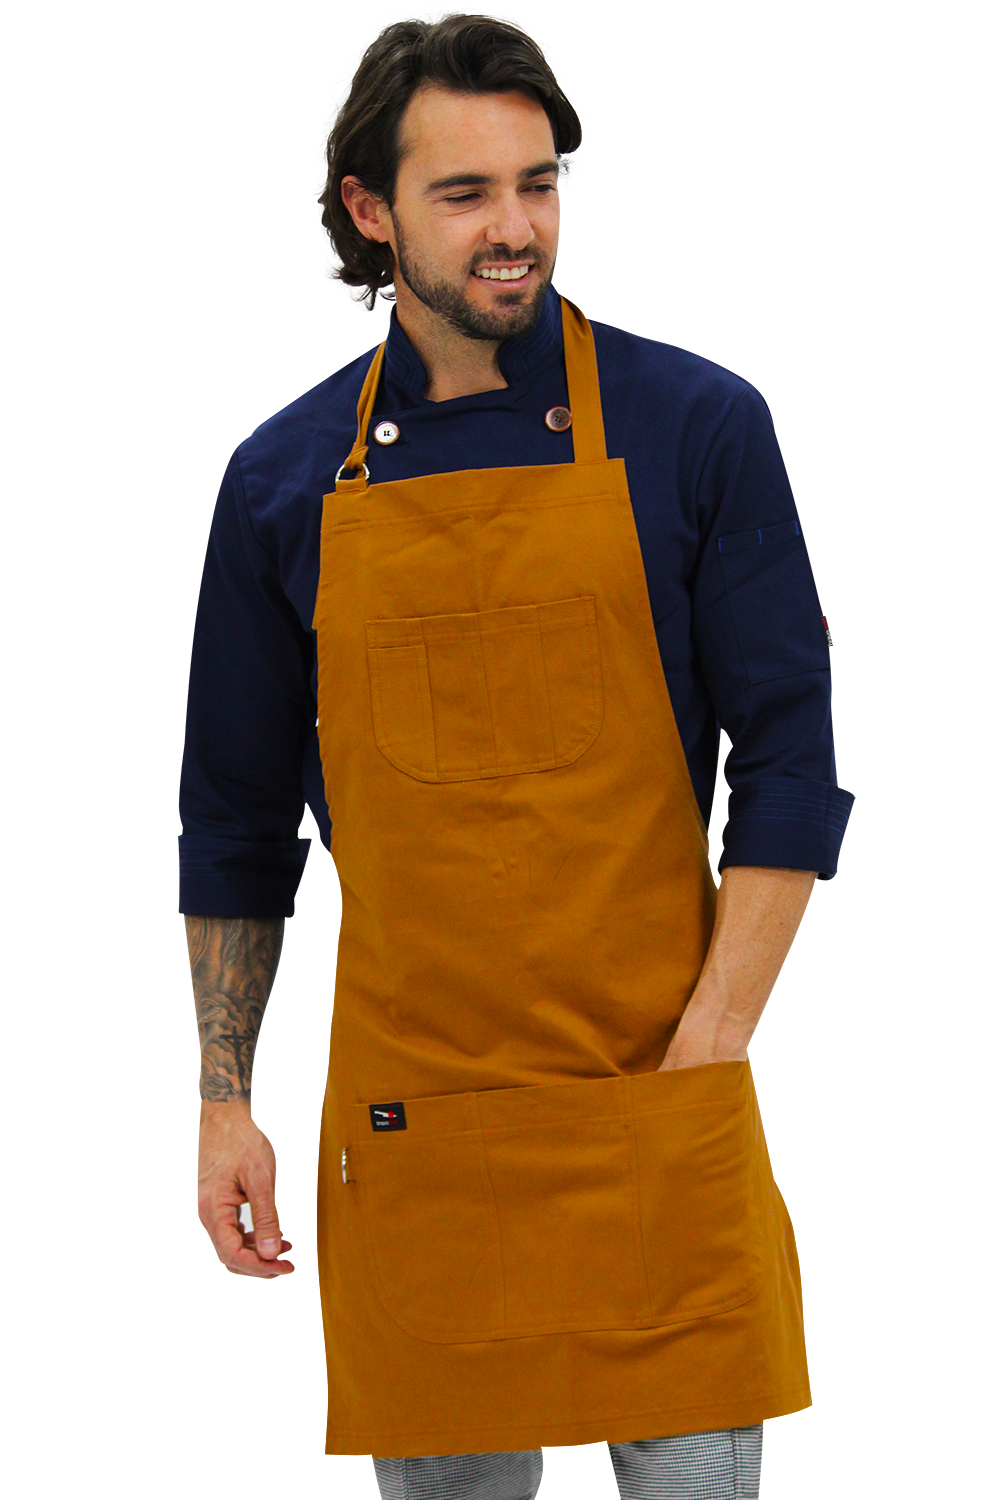 PARA CHEF BRAVO. mandiles, pantalones para chef, pantalones jogger, bordados con tu propio logotipo, uniformes para cocinero, puedes con los accesorios por ejemplo gorros para chef conocido como